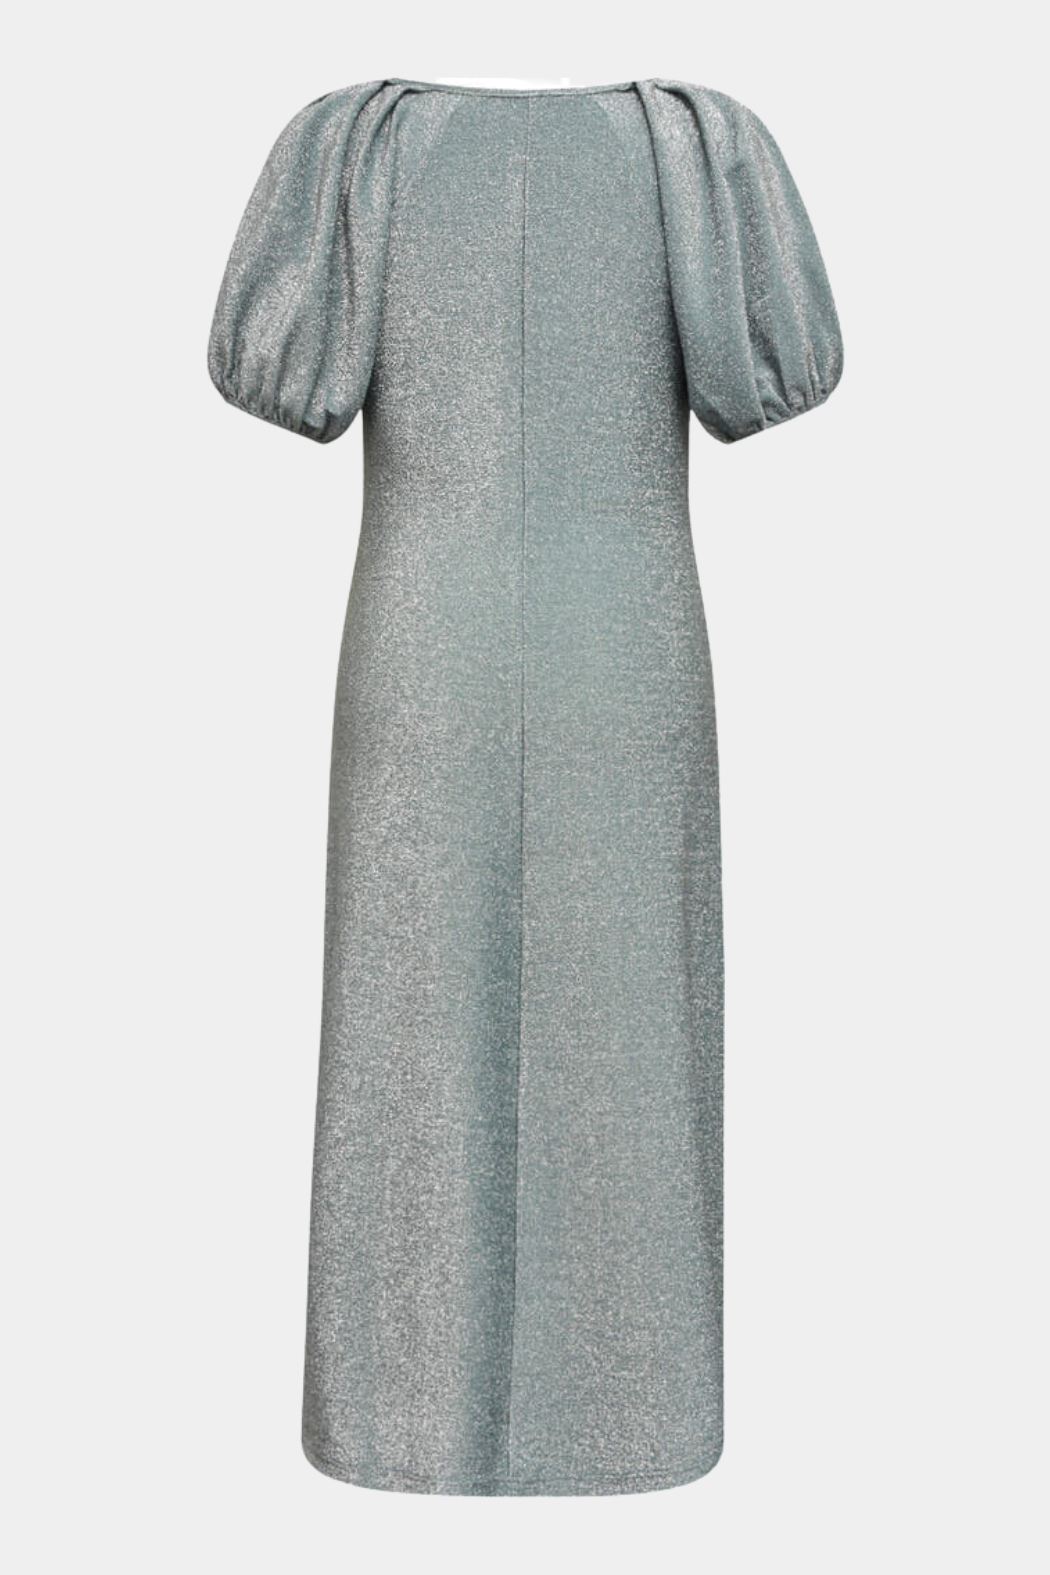 Eva short sleeve dress, turquoise